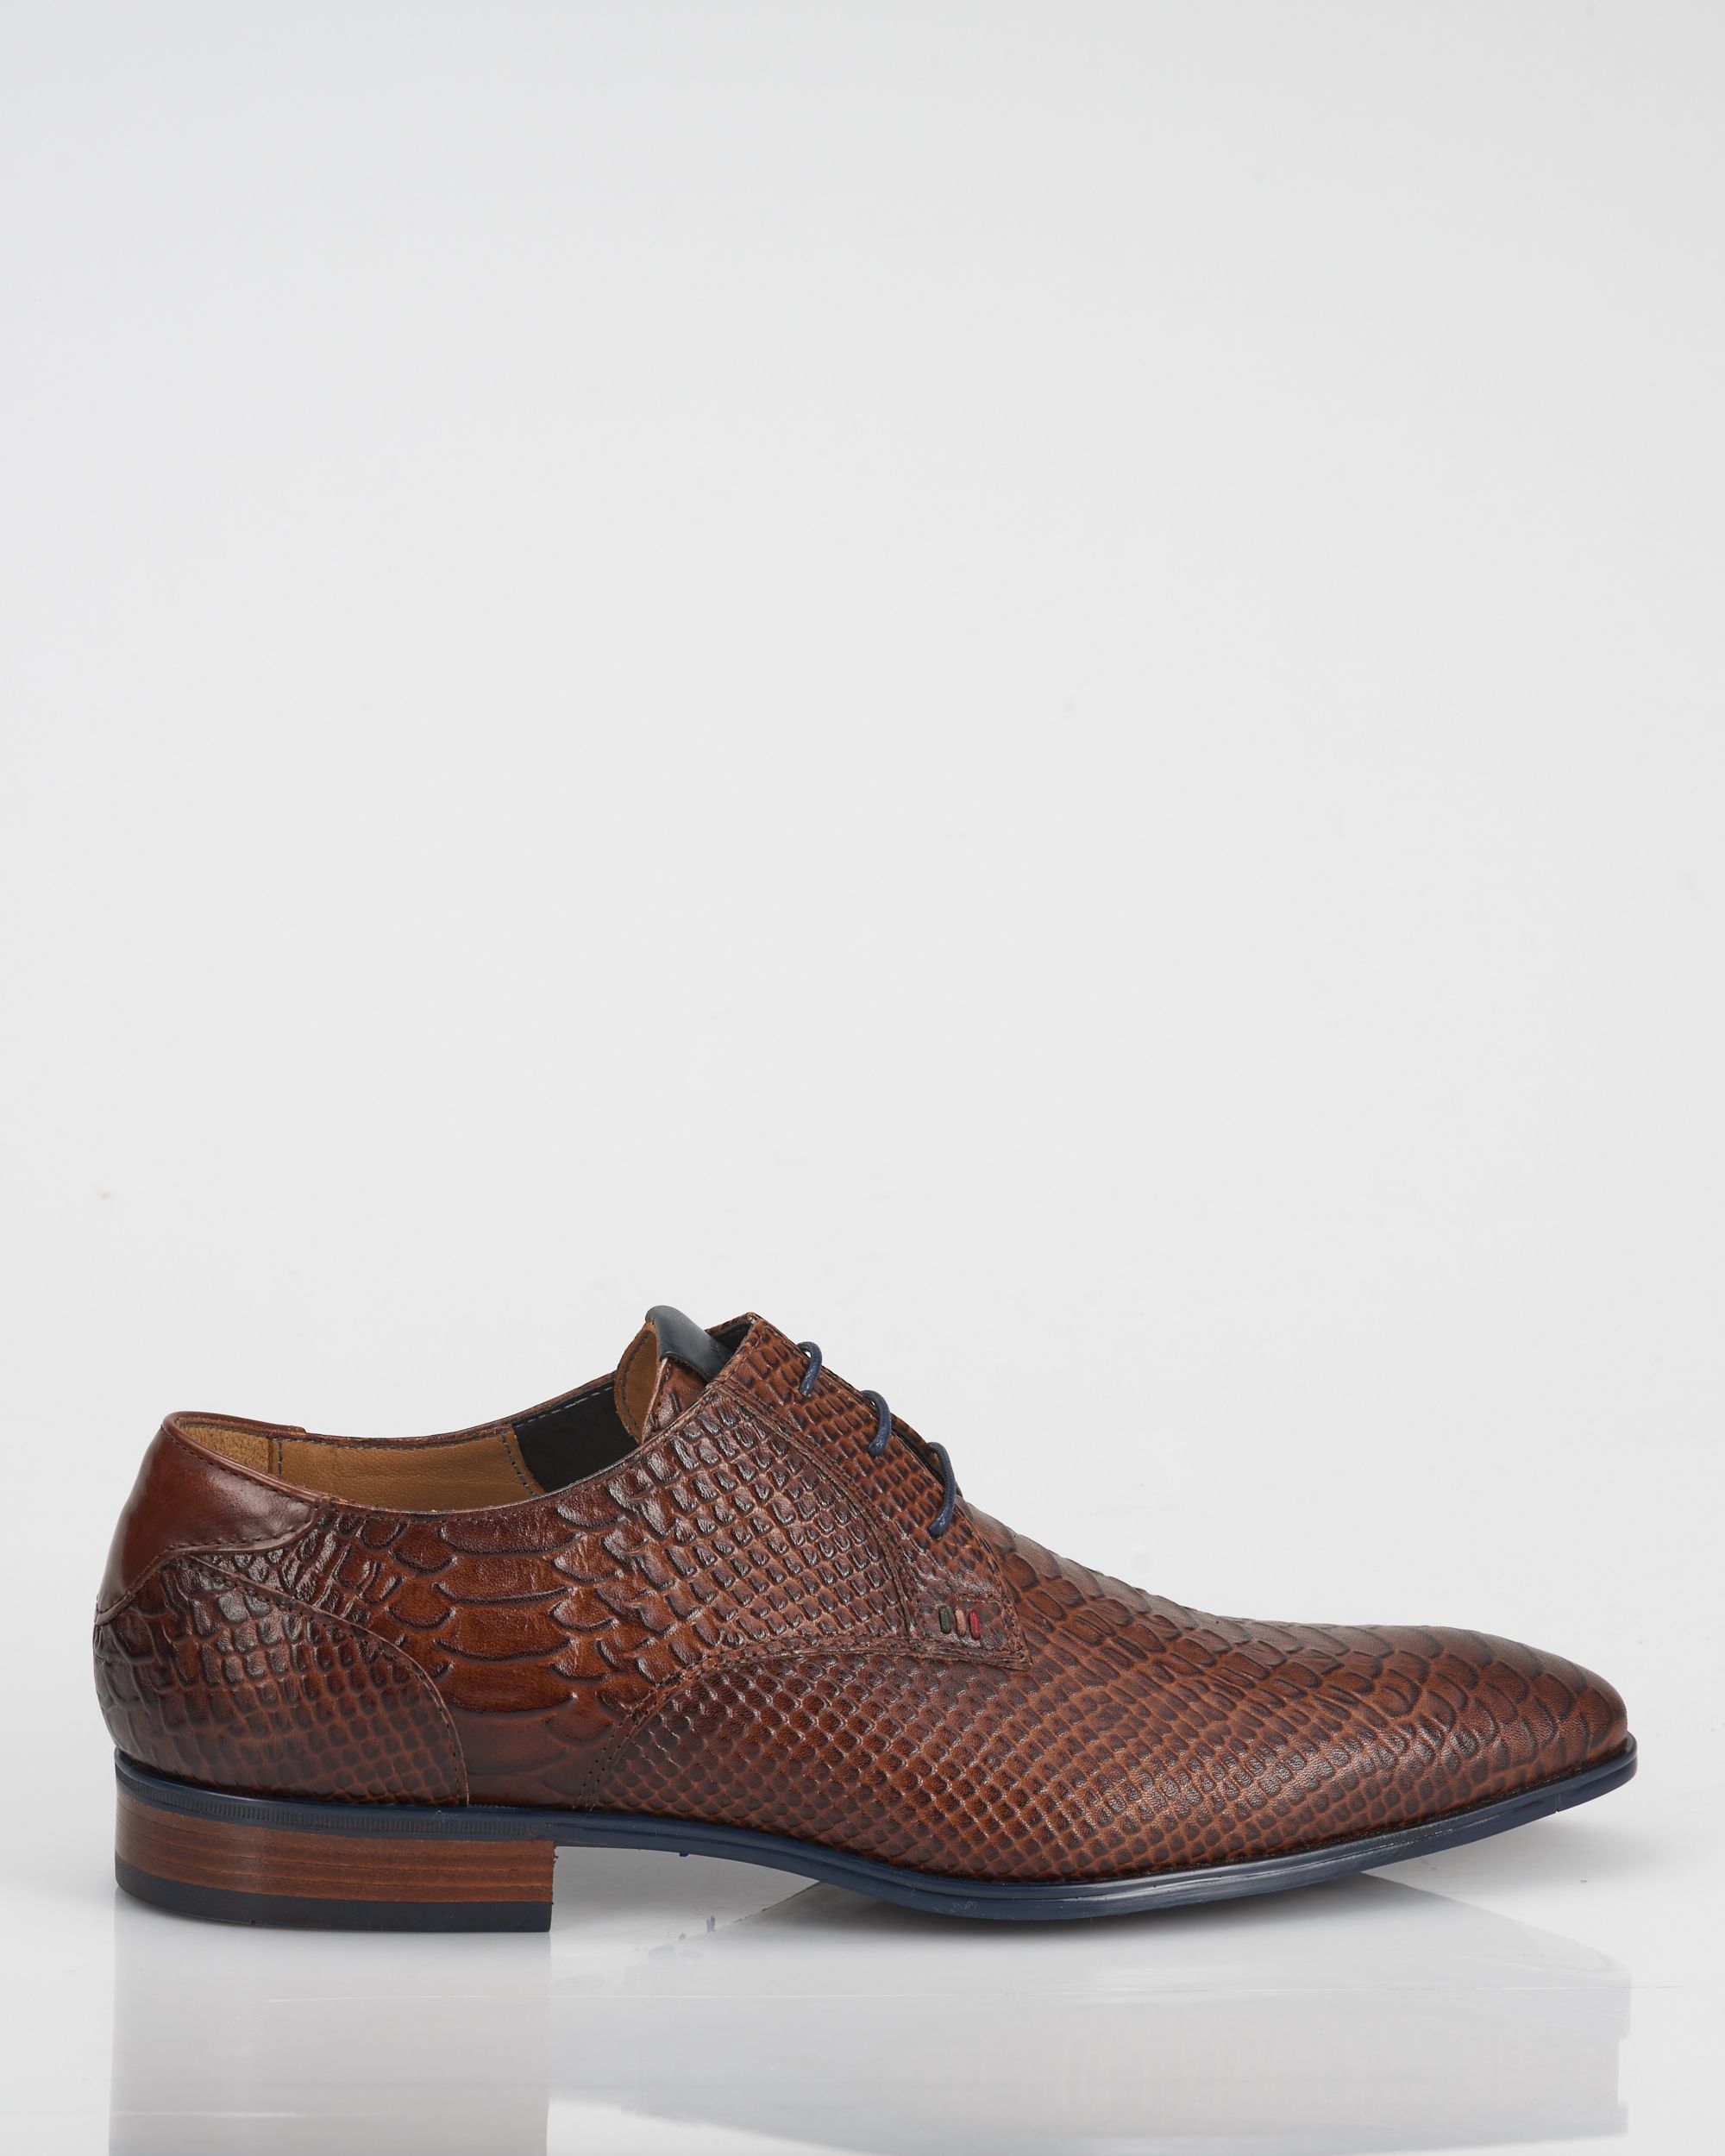 Maar sap Op de kop van Giorgio Geklede schoenen | Shop nu - Only for Men